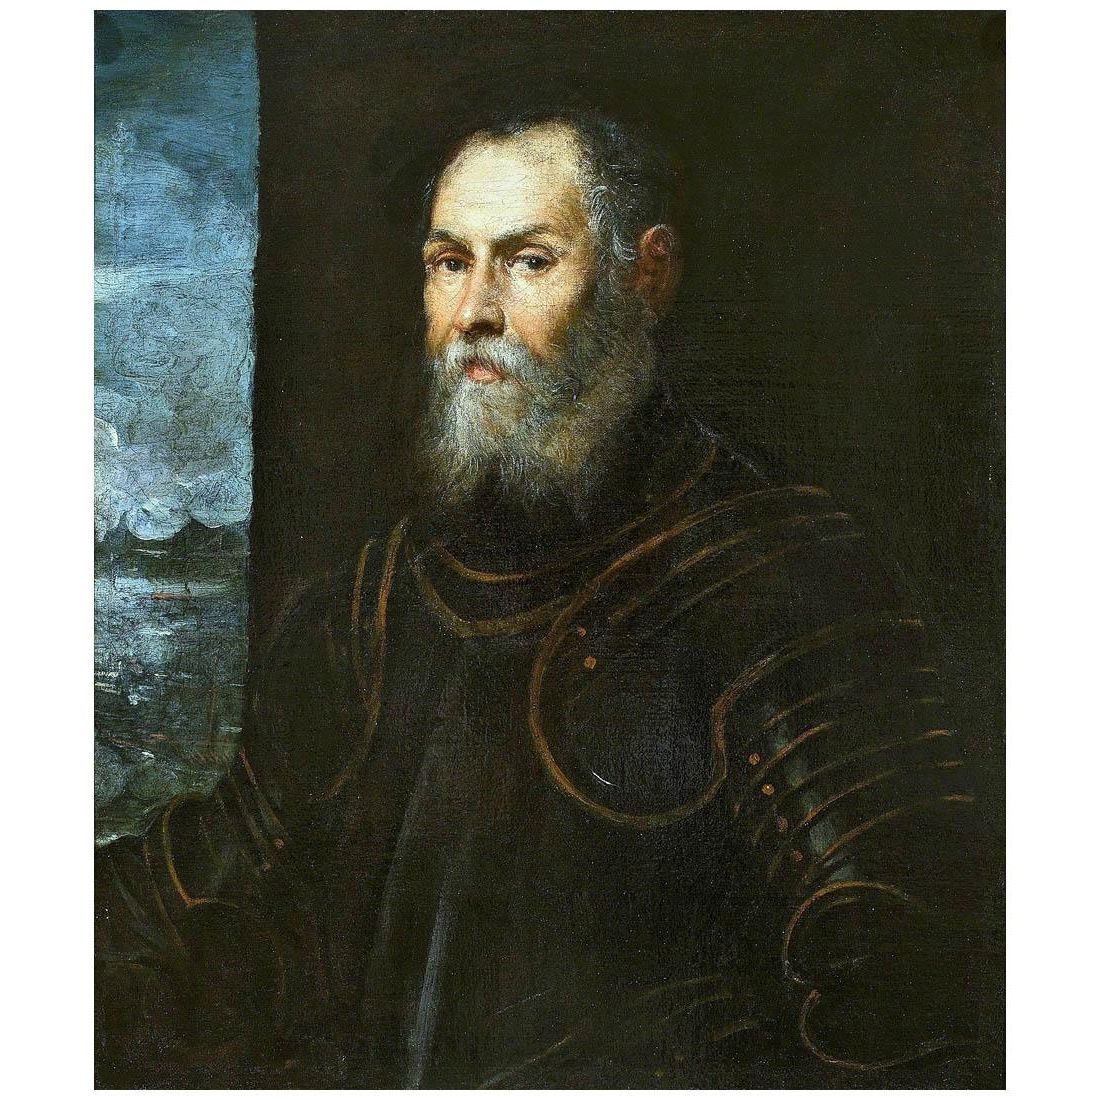 Tintoretto. Ritratto di Ammiraglio veneziano. 1570. National Museum, Warsaw